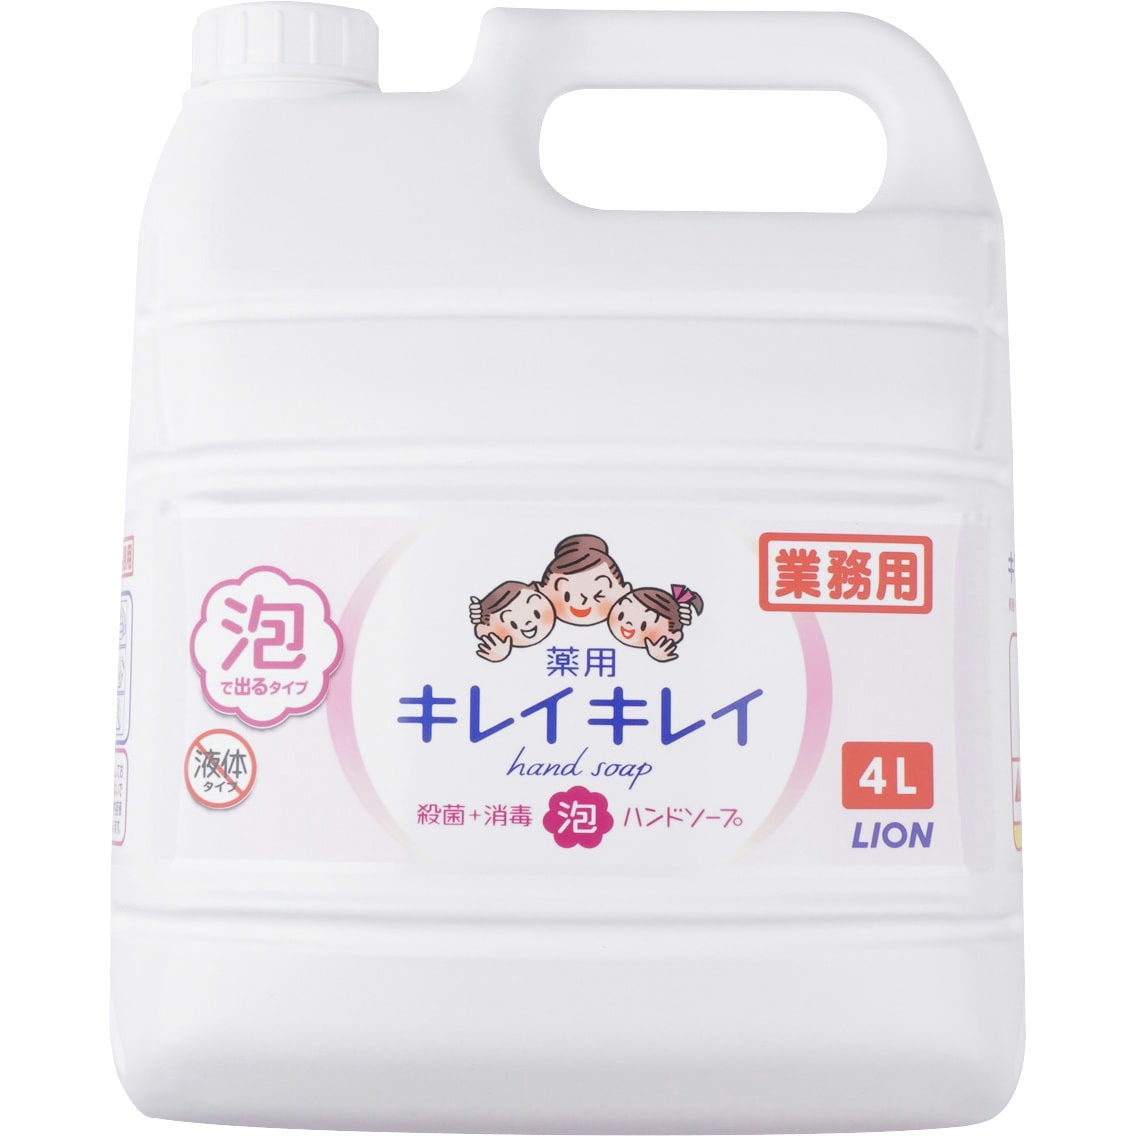 キレイキレイ 薬用泡ハンドソープ 1個(4L) LION(ライオン) 【通販サイトMonotaRO】